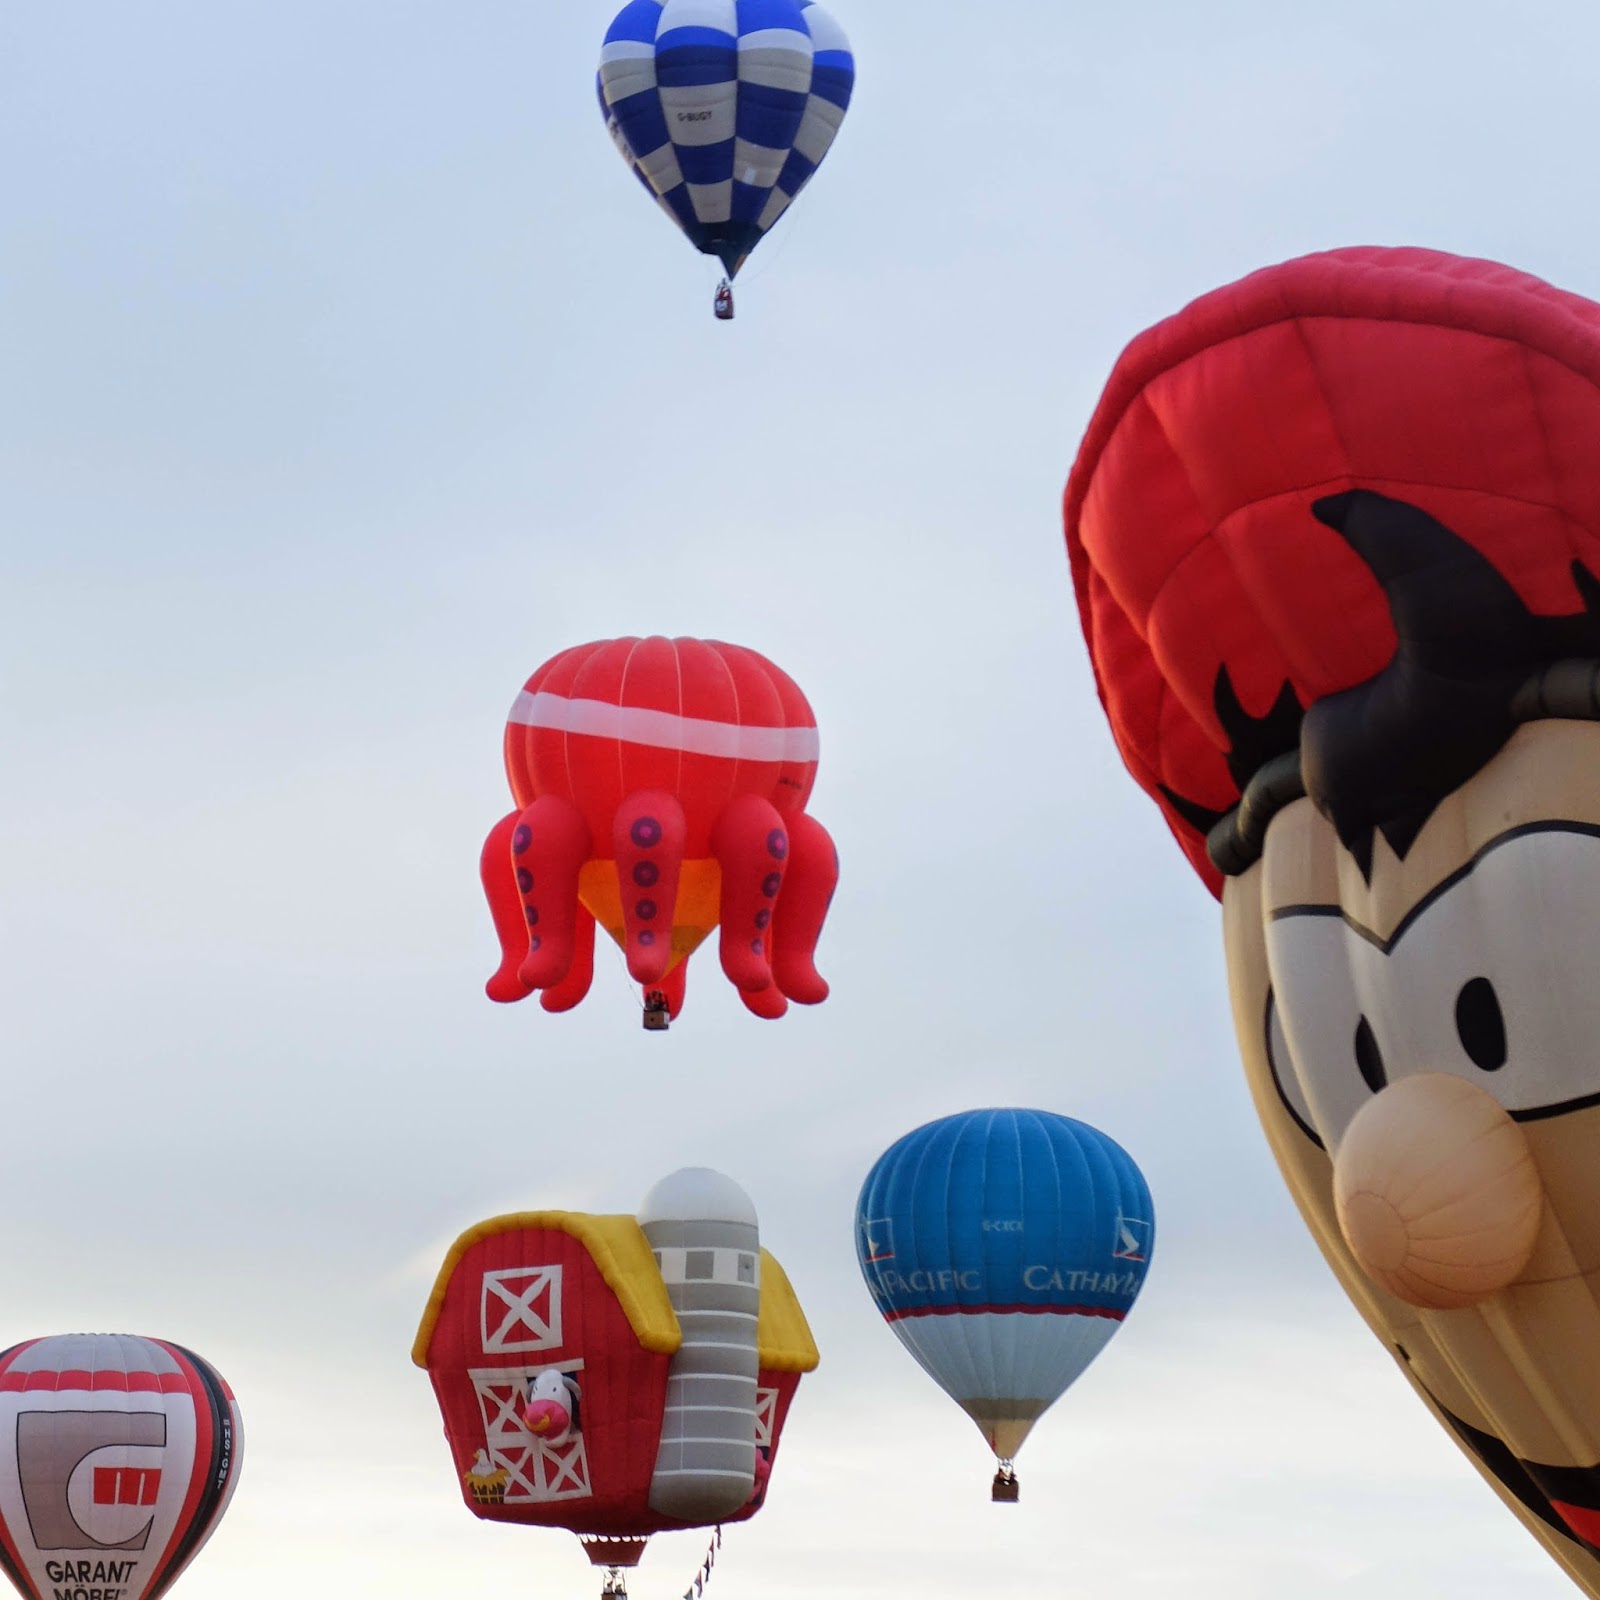 19th Hot Air Balloon Fiesta